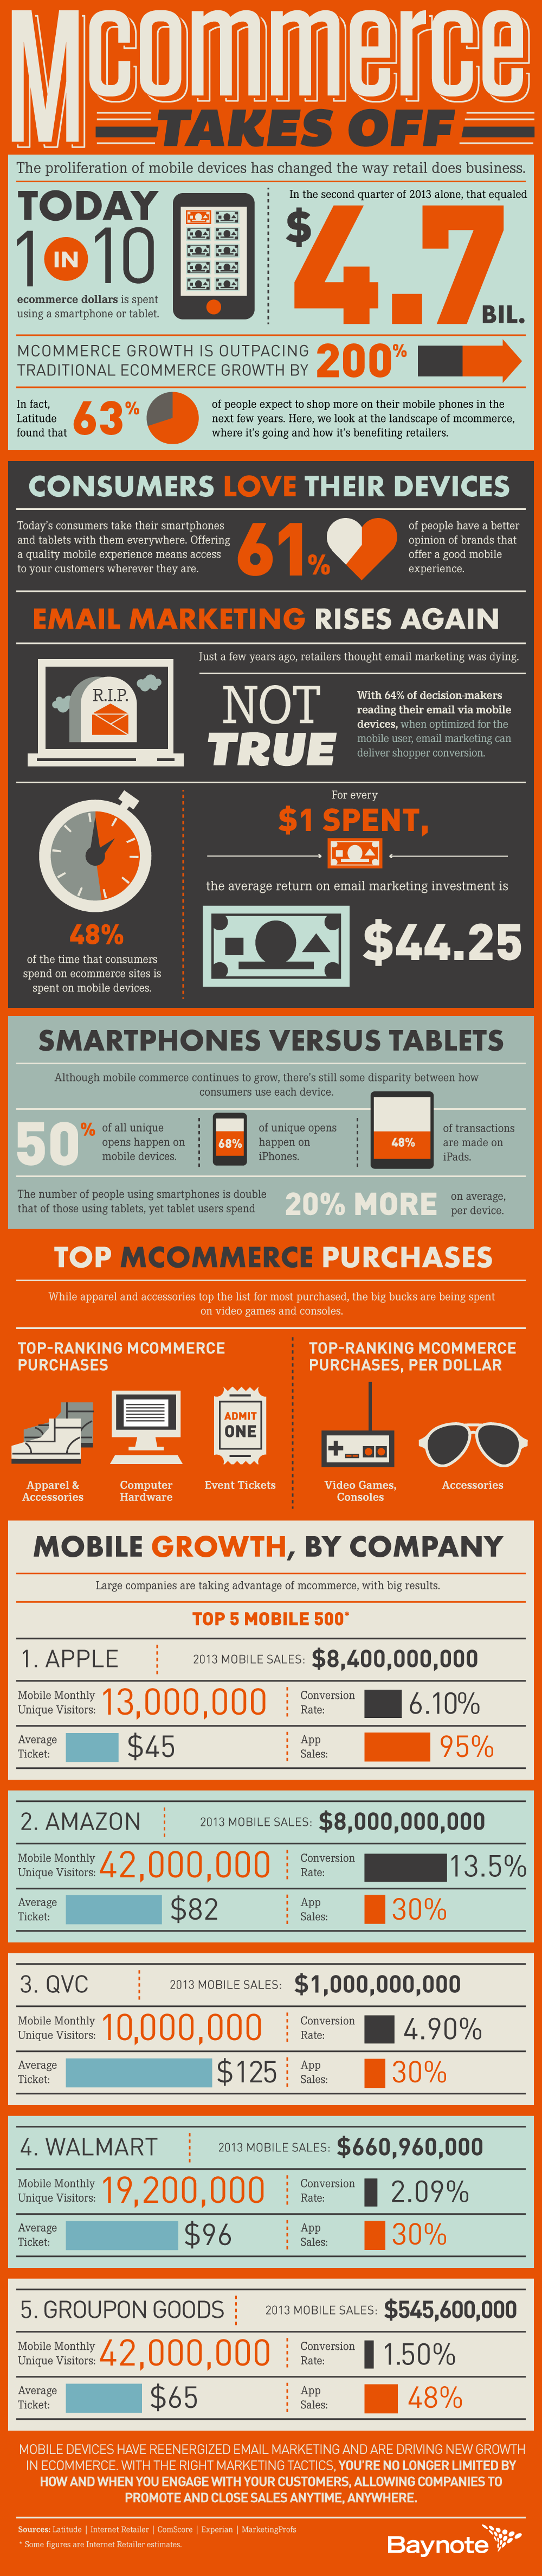 mCommerce_Infographic